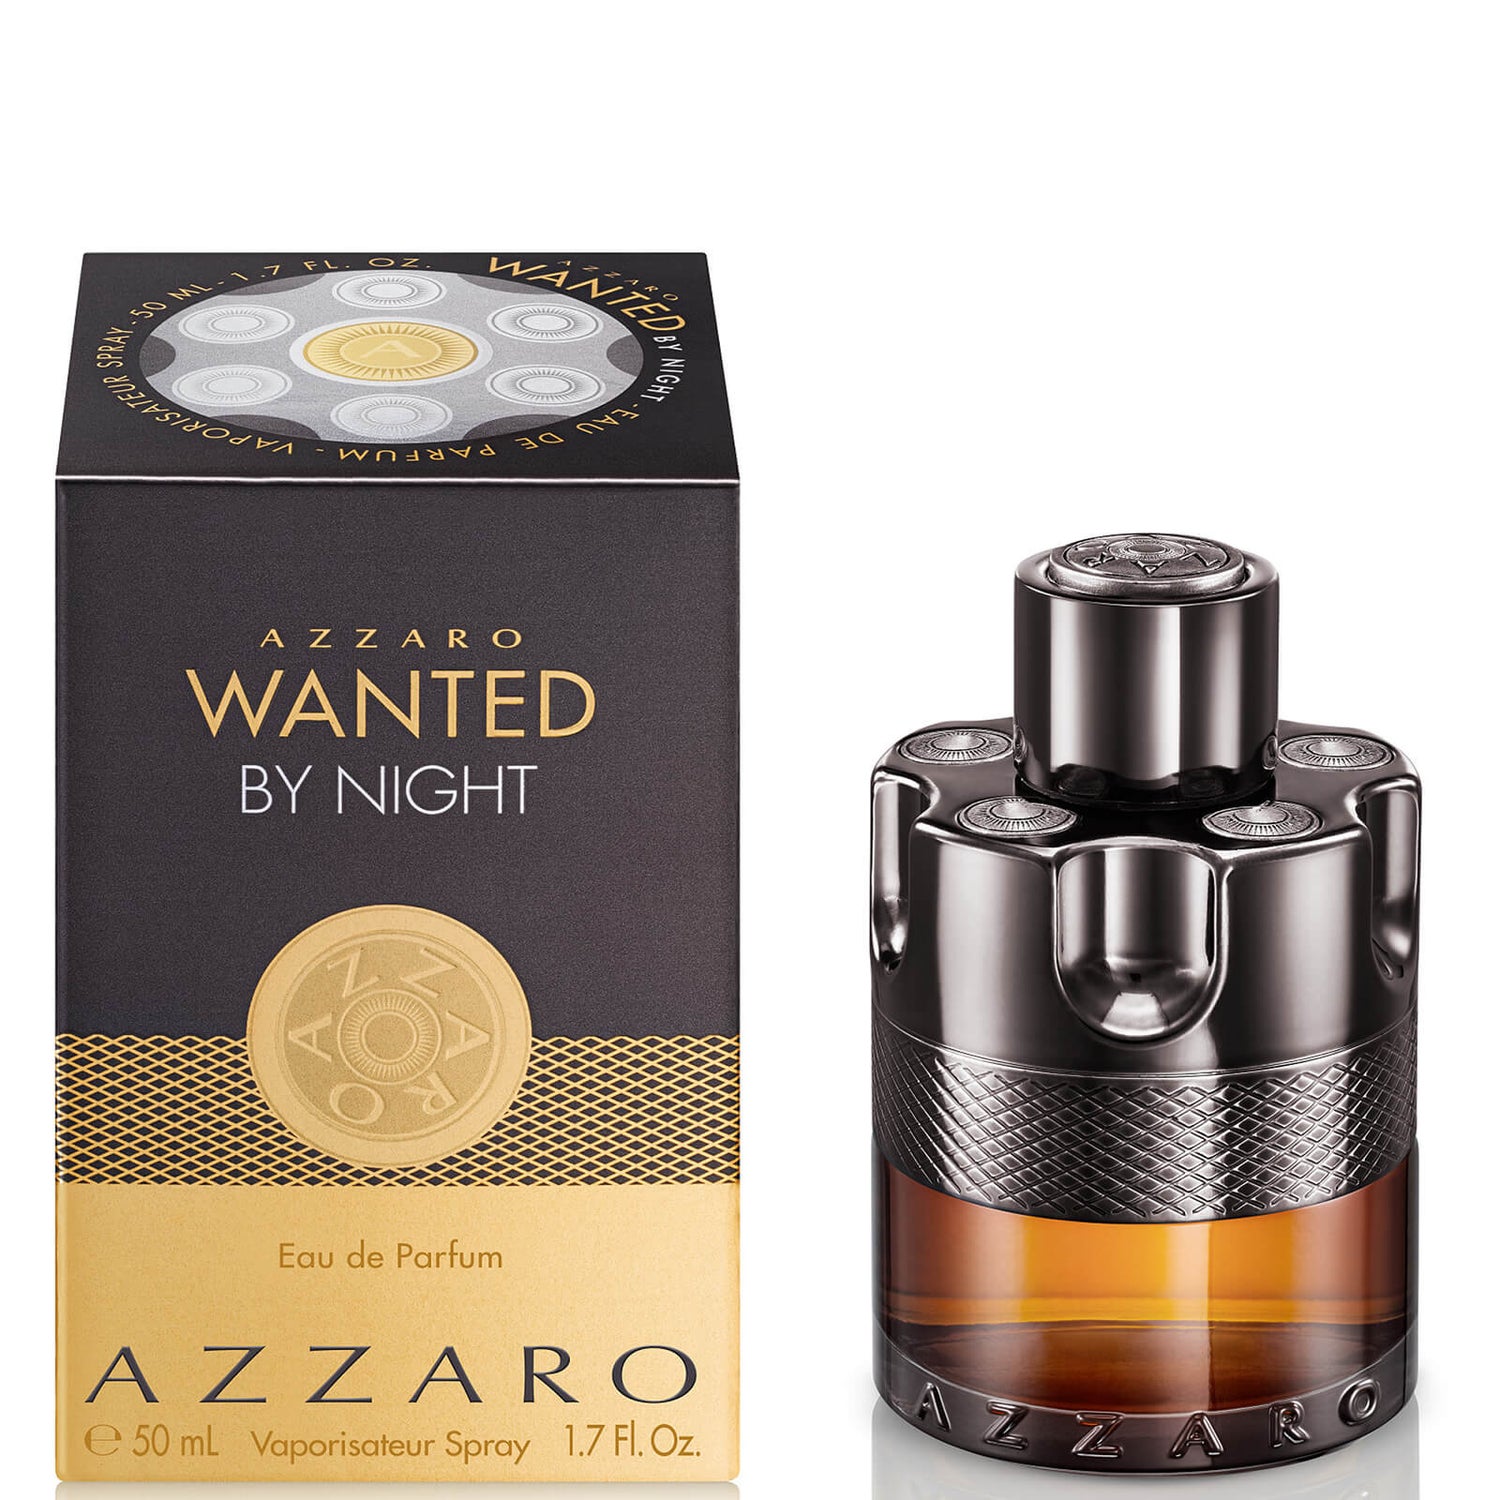 Azzaro Wanted By Night Eau de Parfum - 50 ml